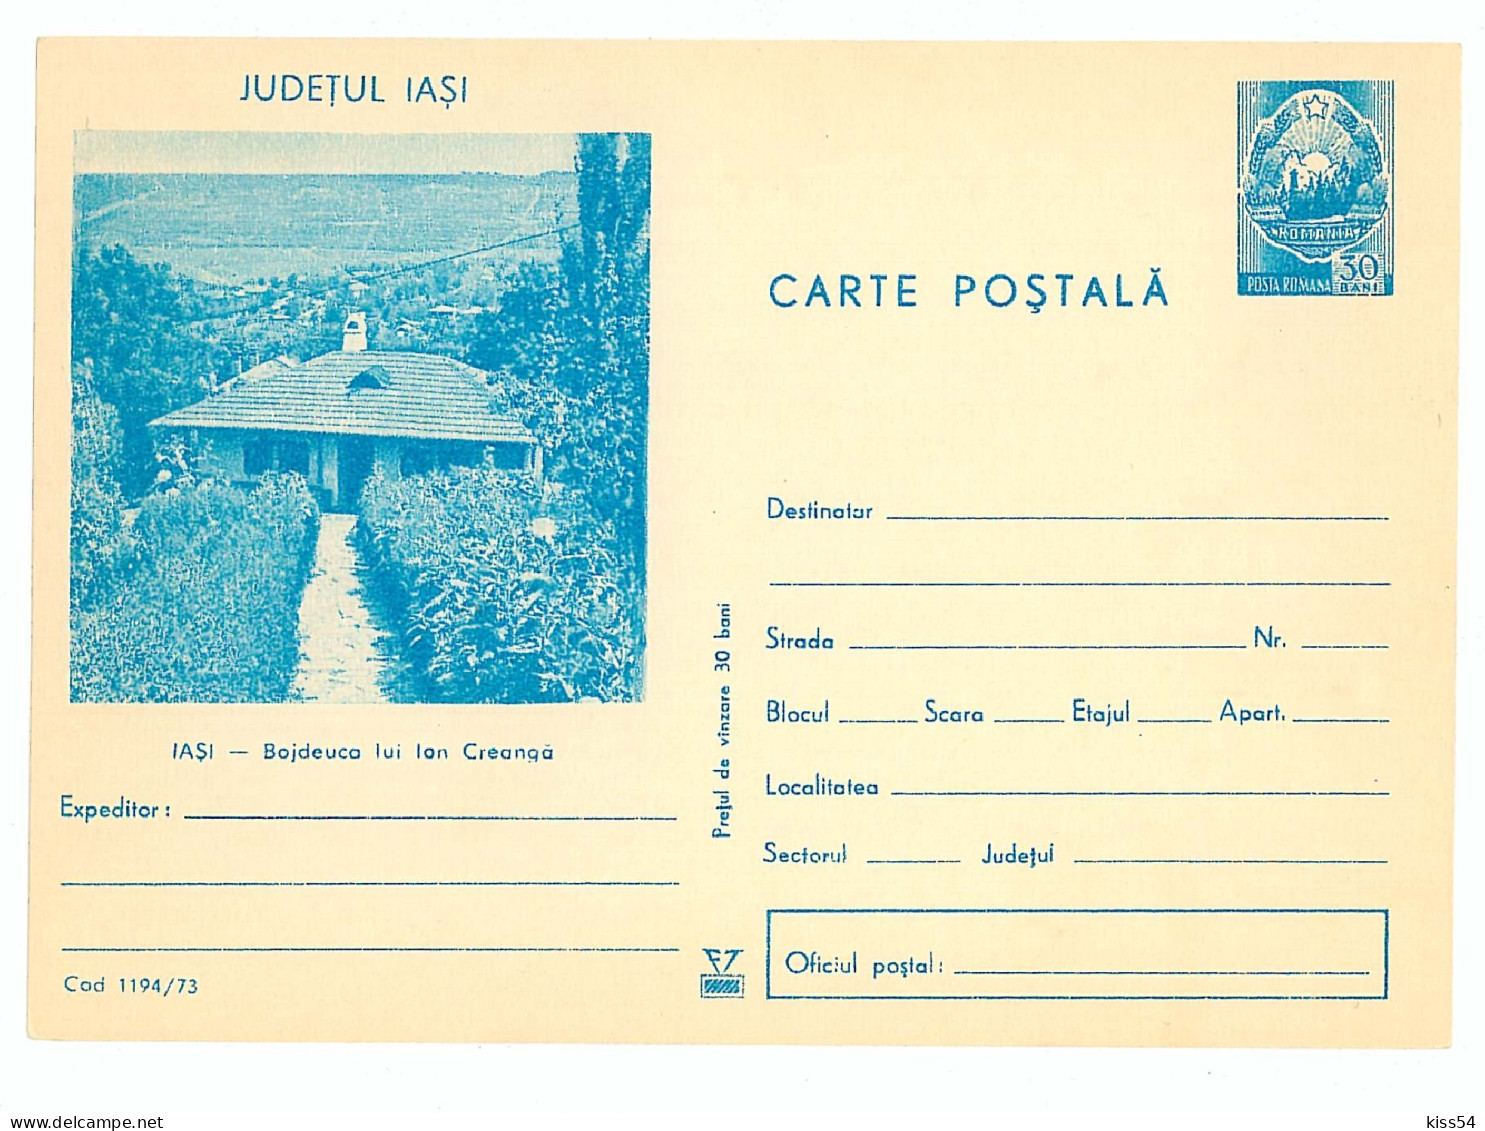 IP 73 - 1194 IASI, Creanga House - Stationery - Unused - 1973 - Enteros Postales